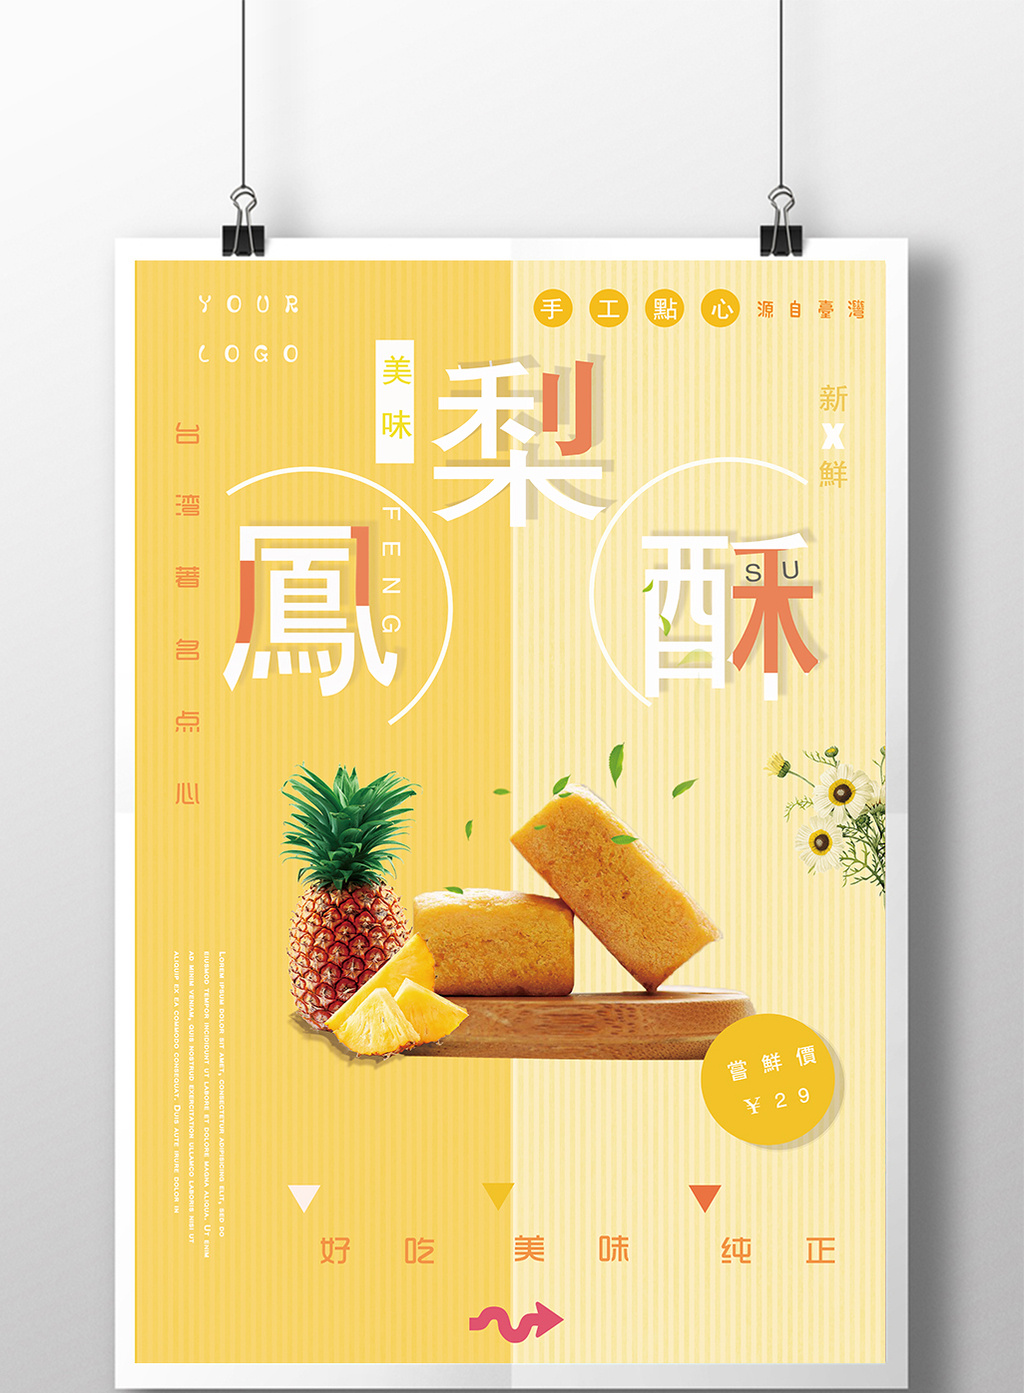 凤梨酥台湾美食小吃甜点海报设计